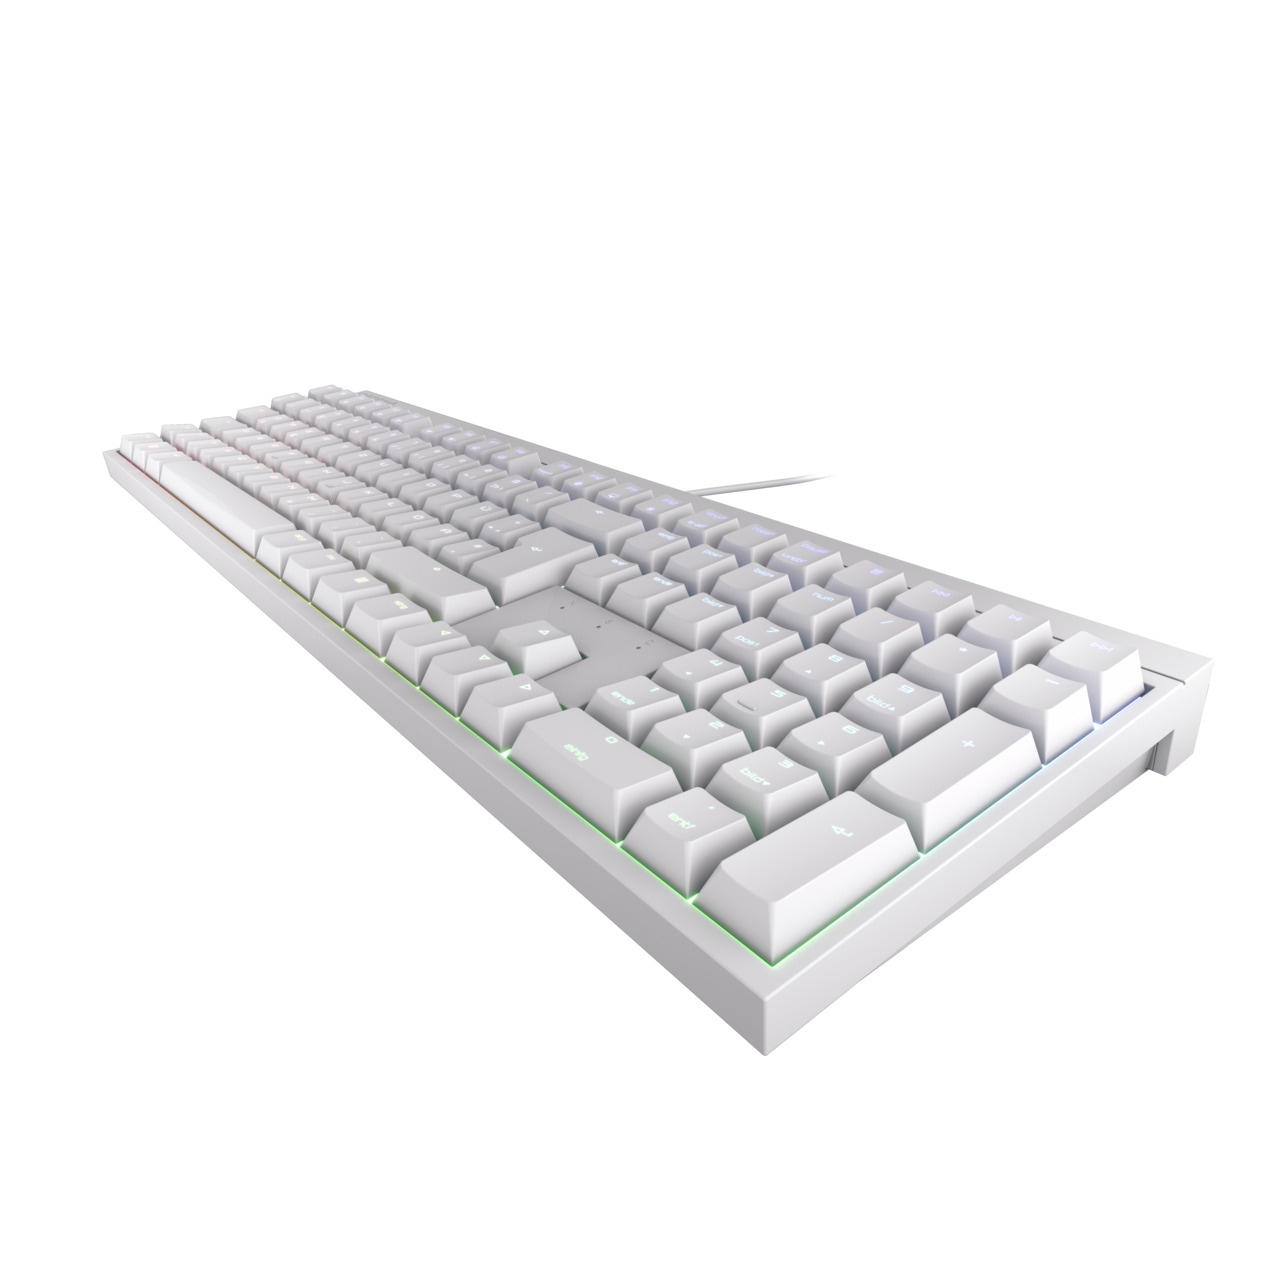 Cherry Gaming-Tastatur »MX 2.0S RGB«, MX Blue